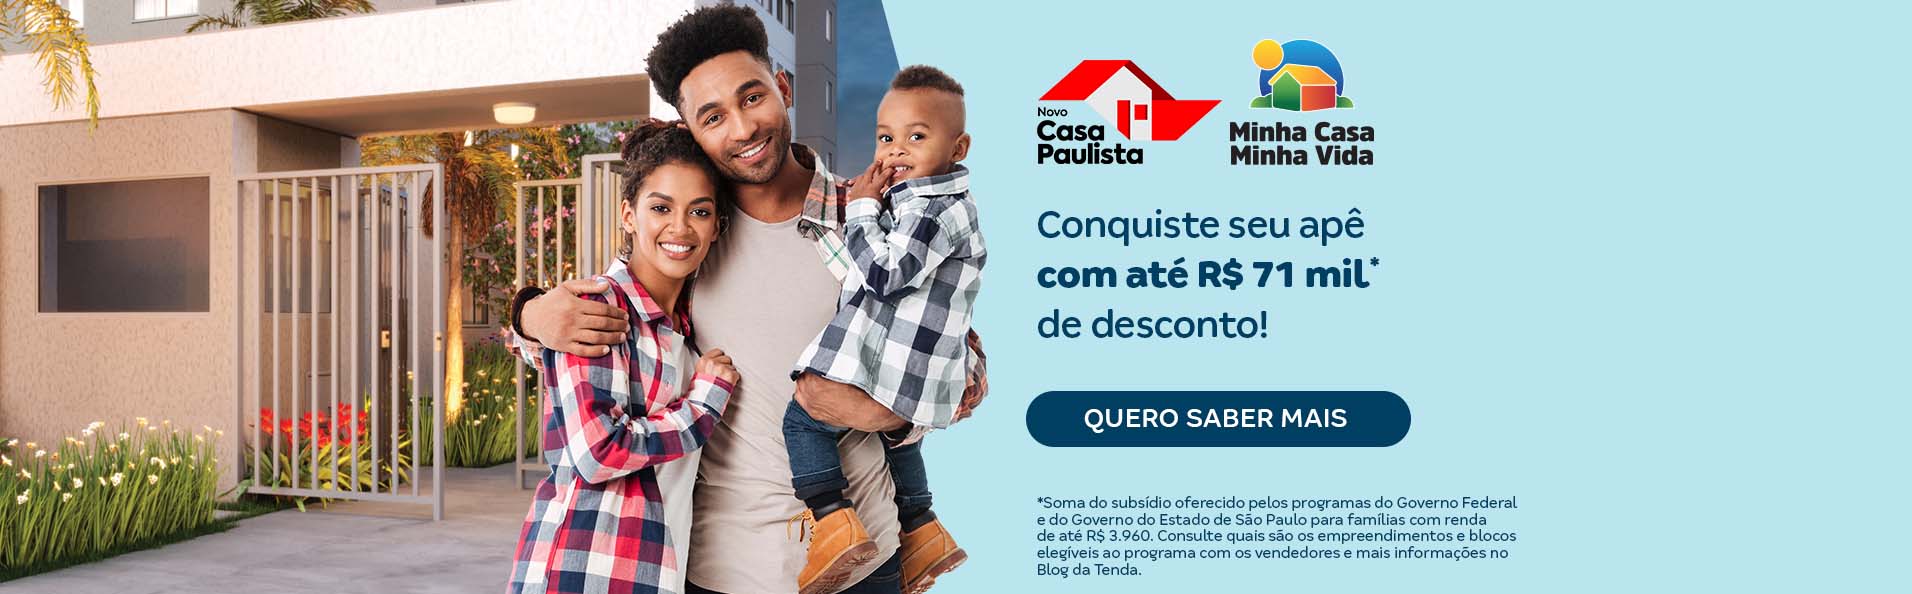 Conheça o programa Casa Paulista, e veja como conseguir até 71 mil de desconto ao comprar um apartamento | Tenda.com